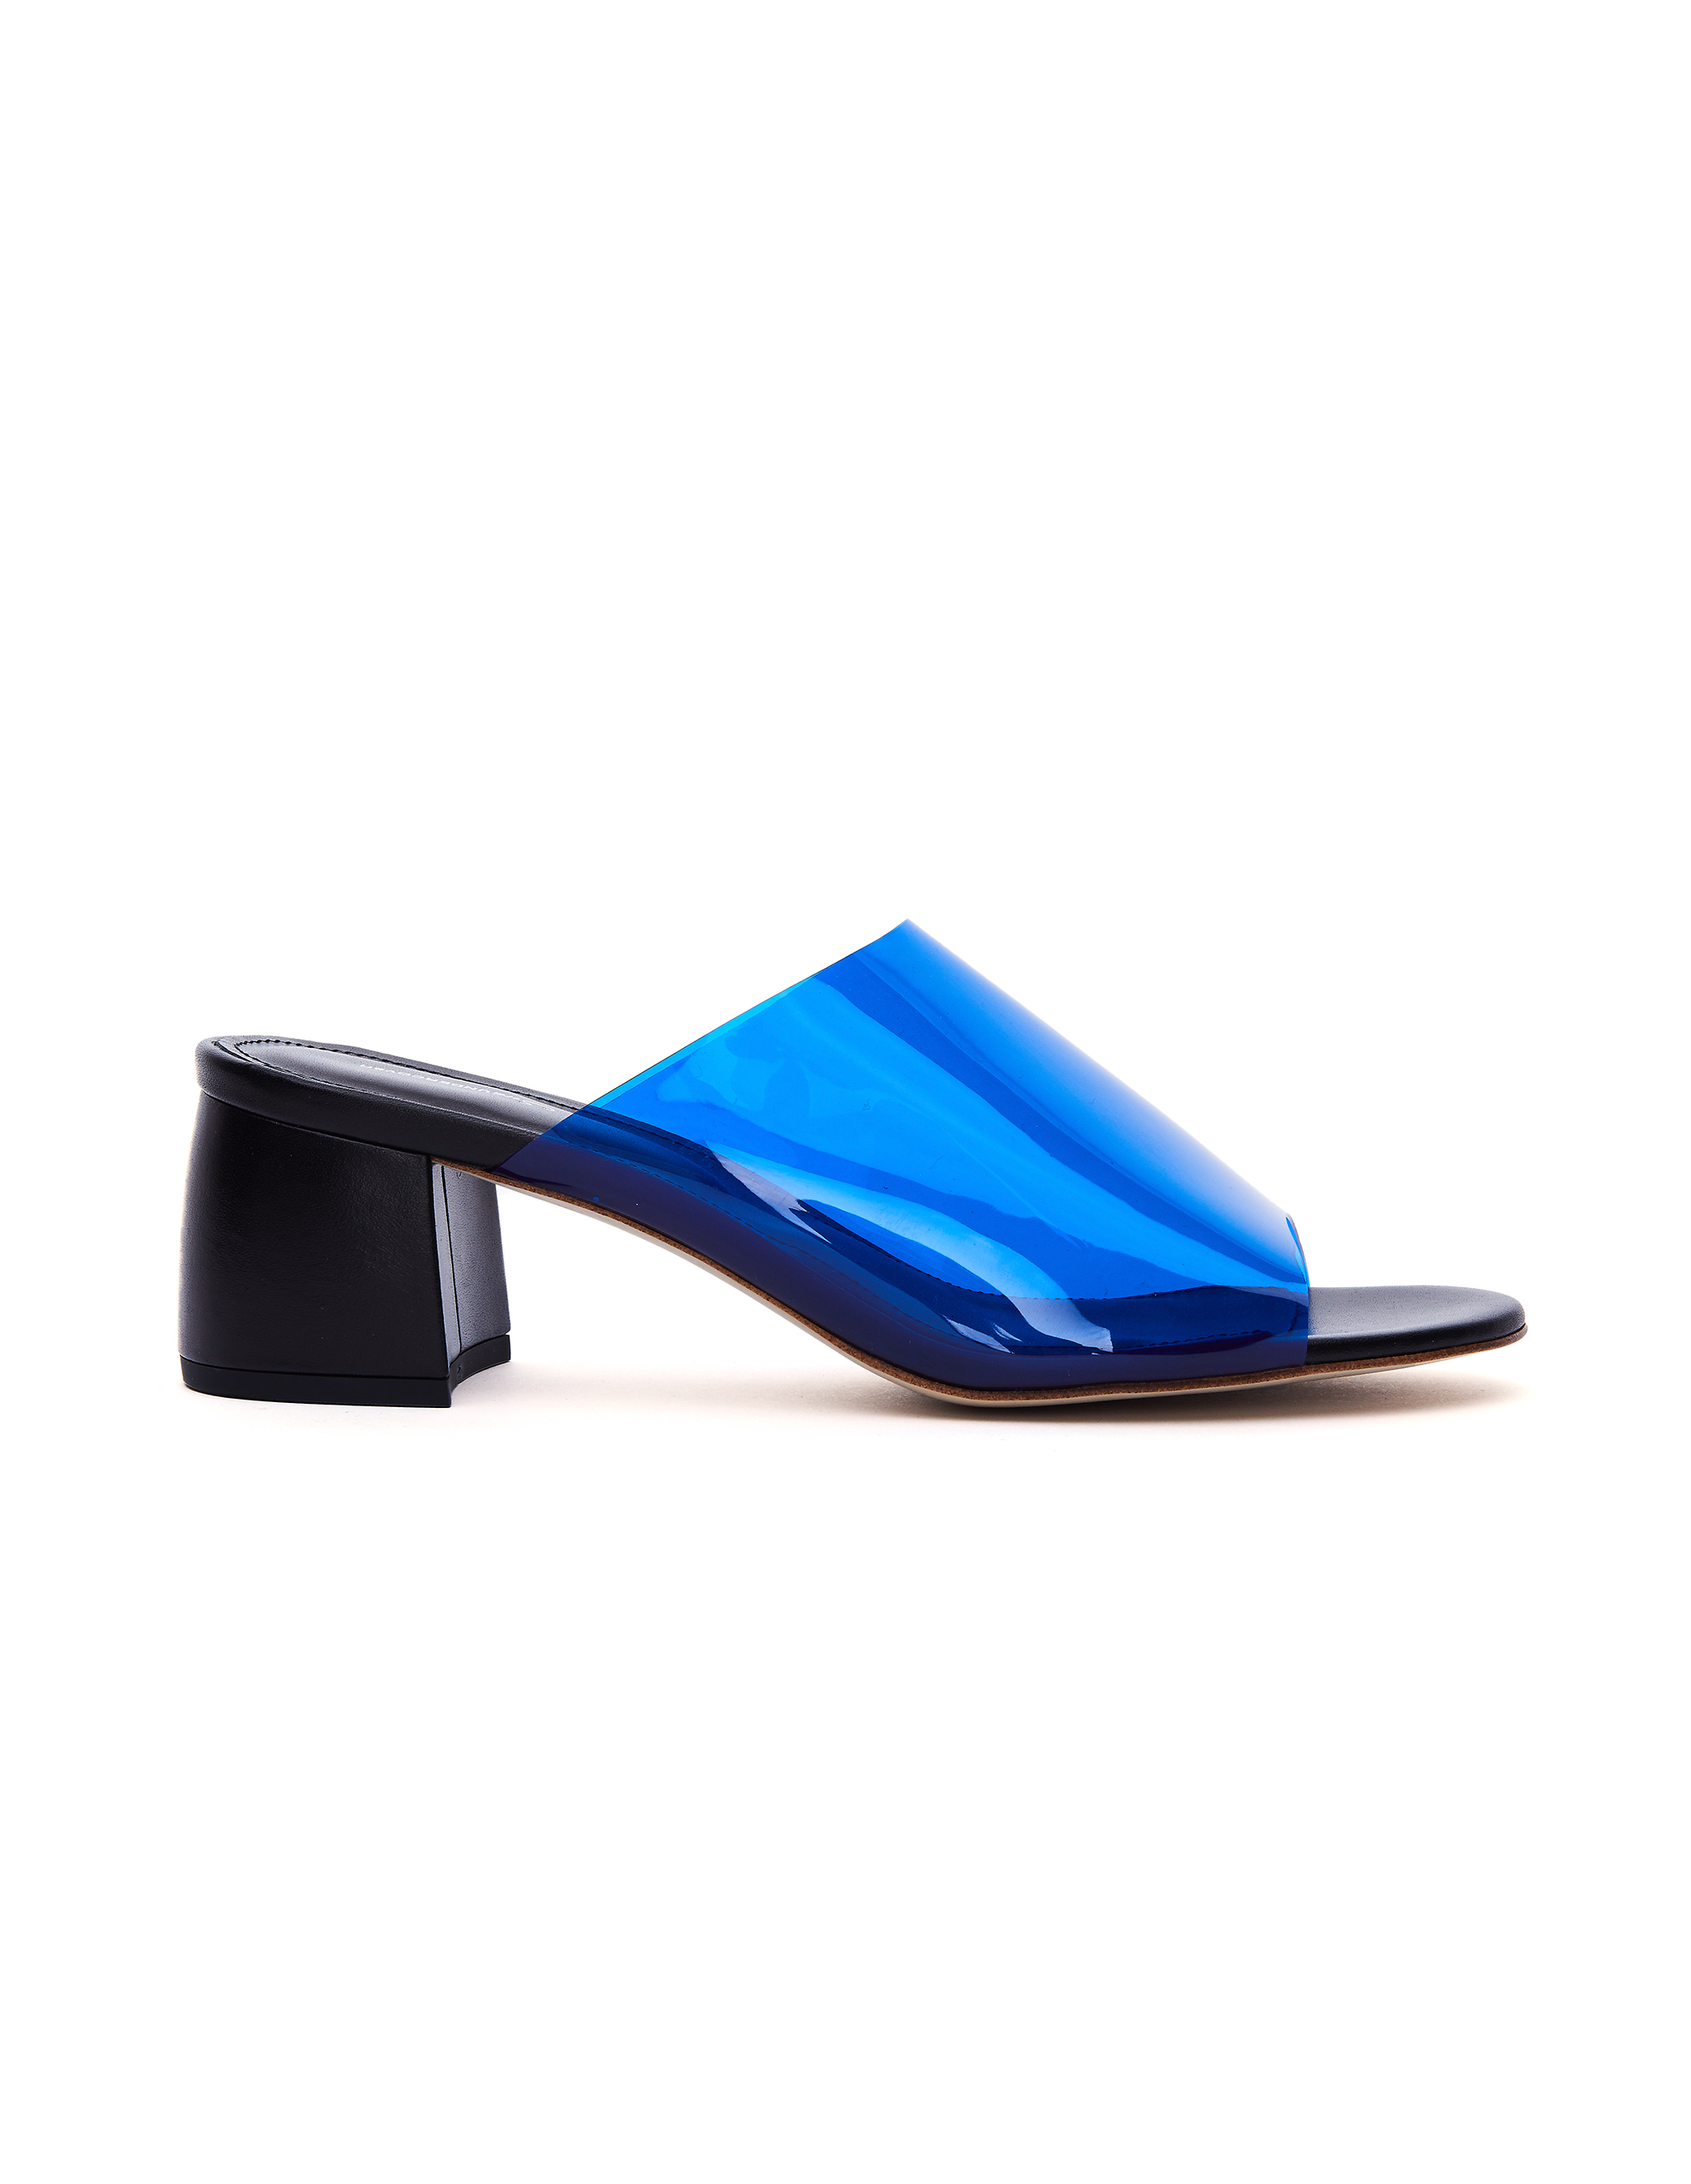 Синие мюли на каблуке - Sue Undercover SUW1F01/blue